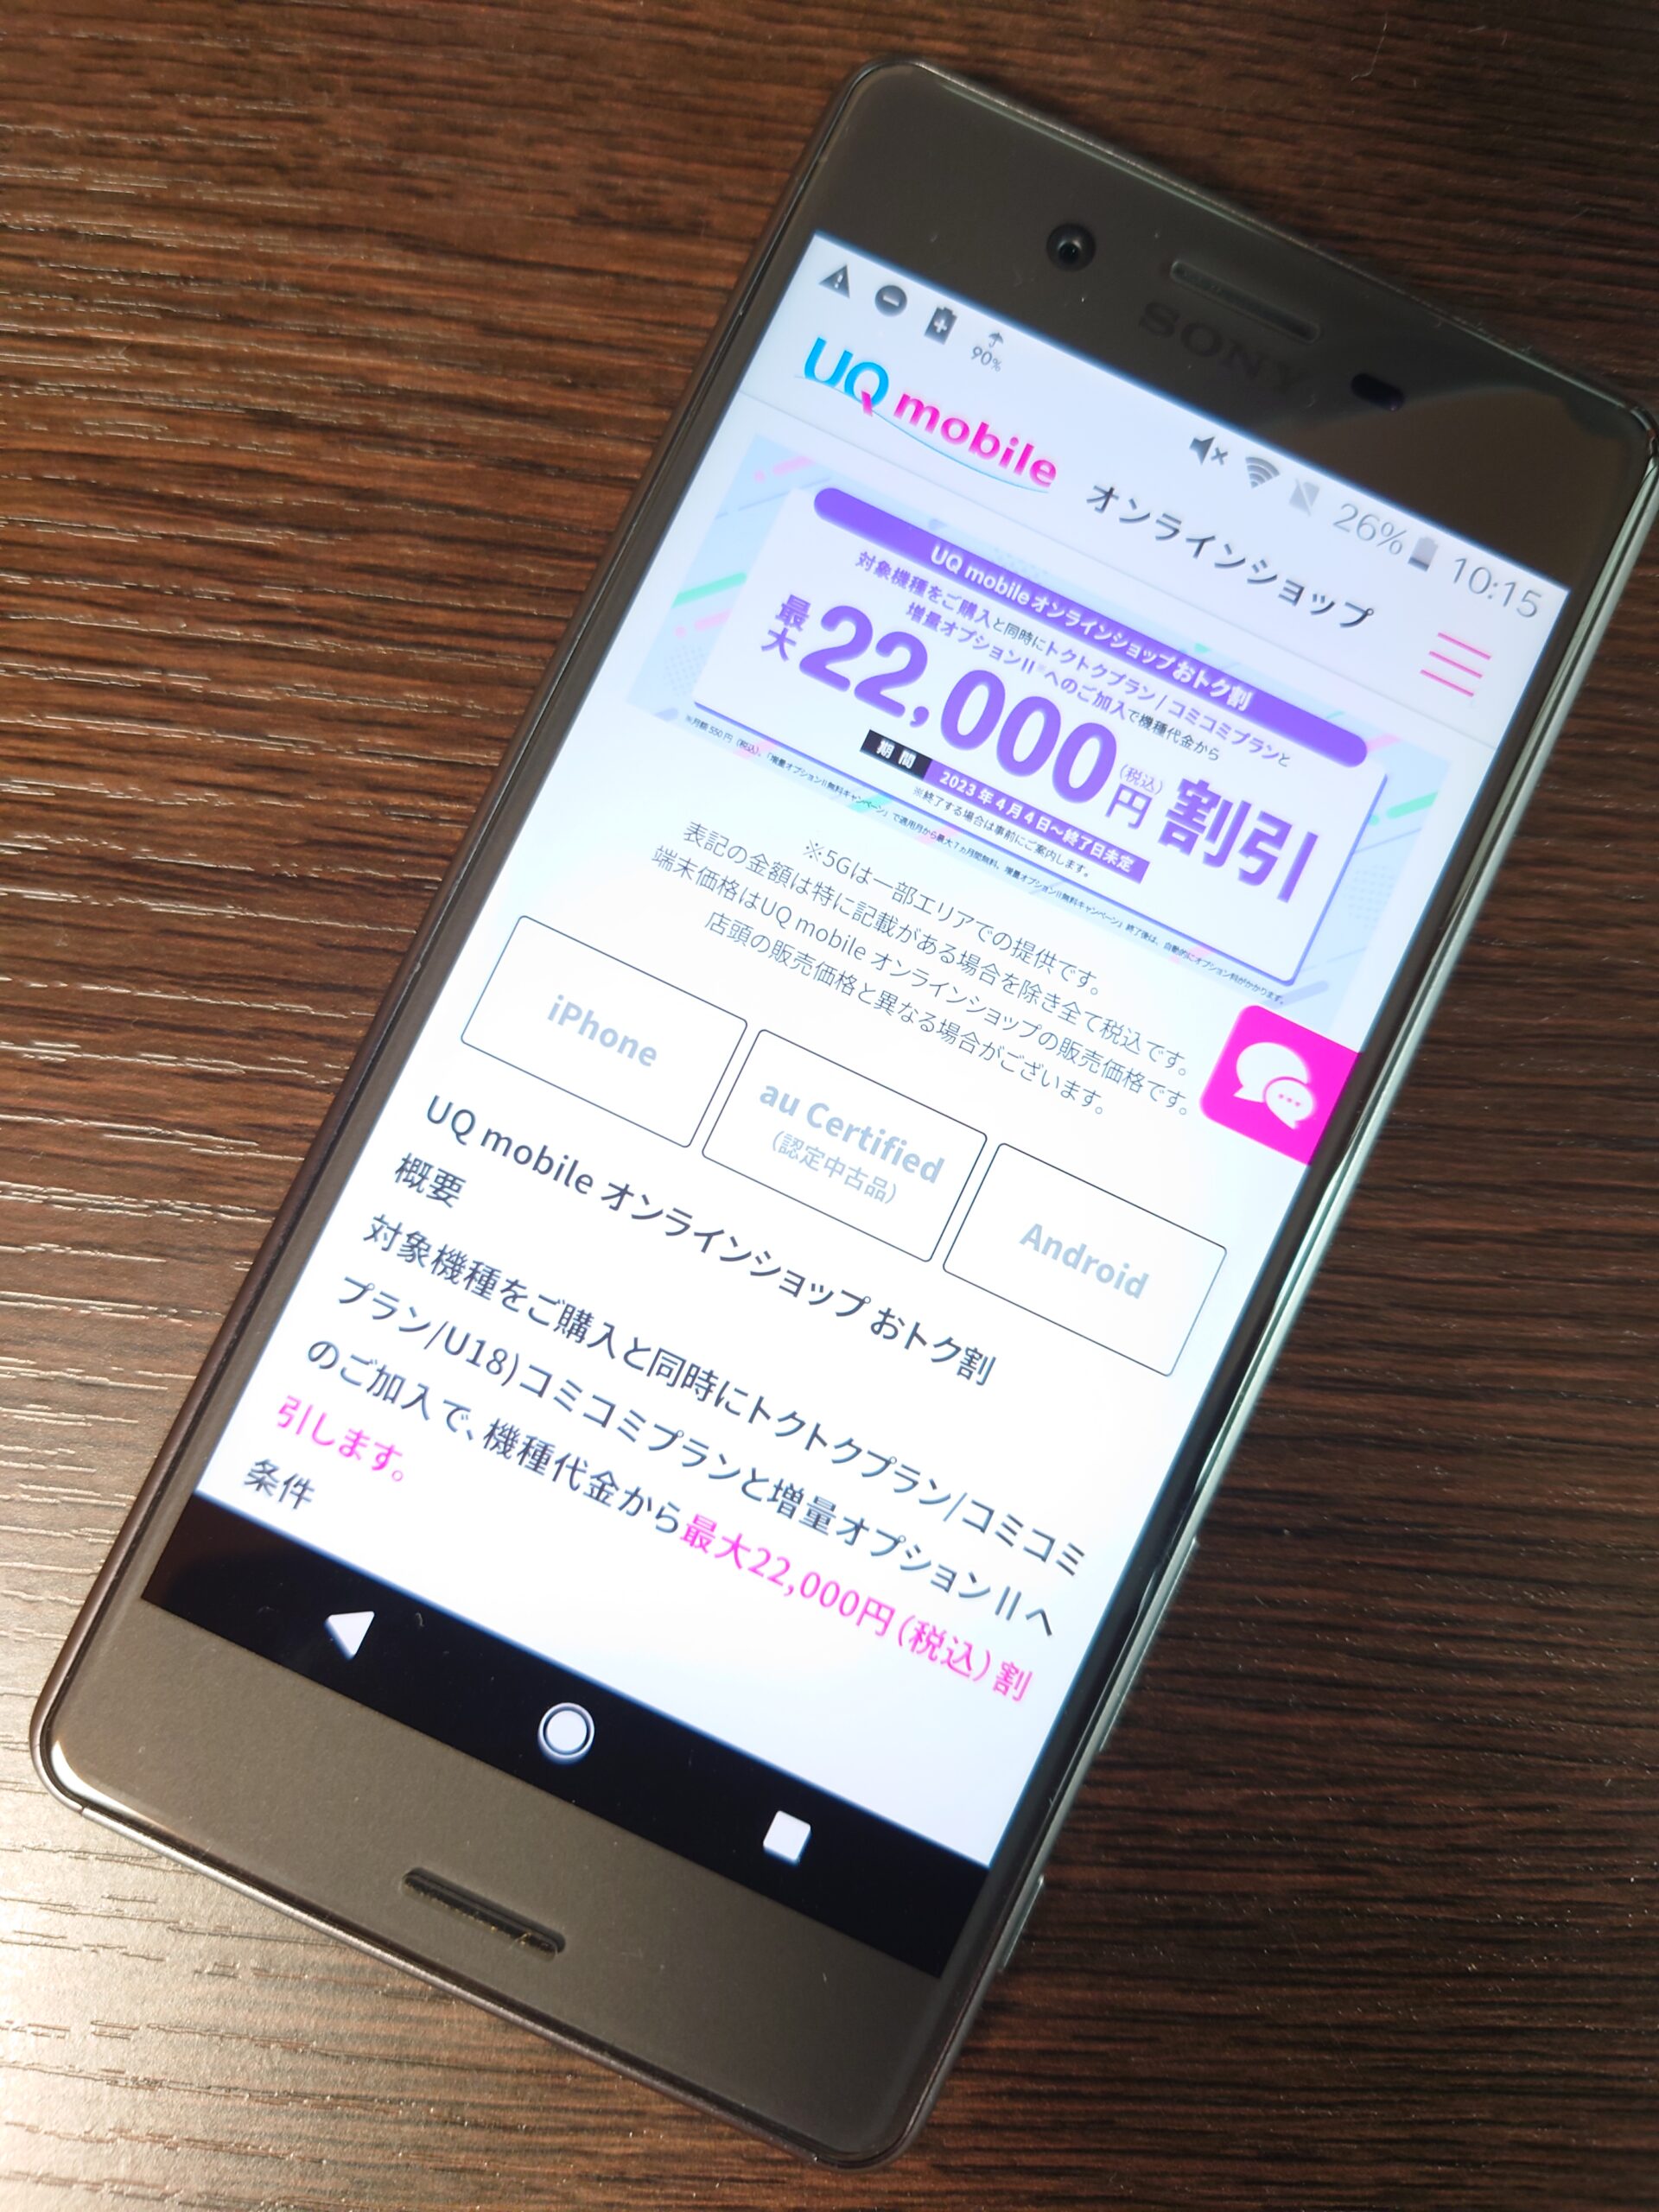 UQモバイル最大22,000円割引キャンペーン